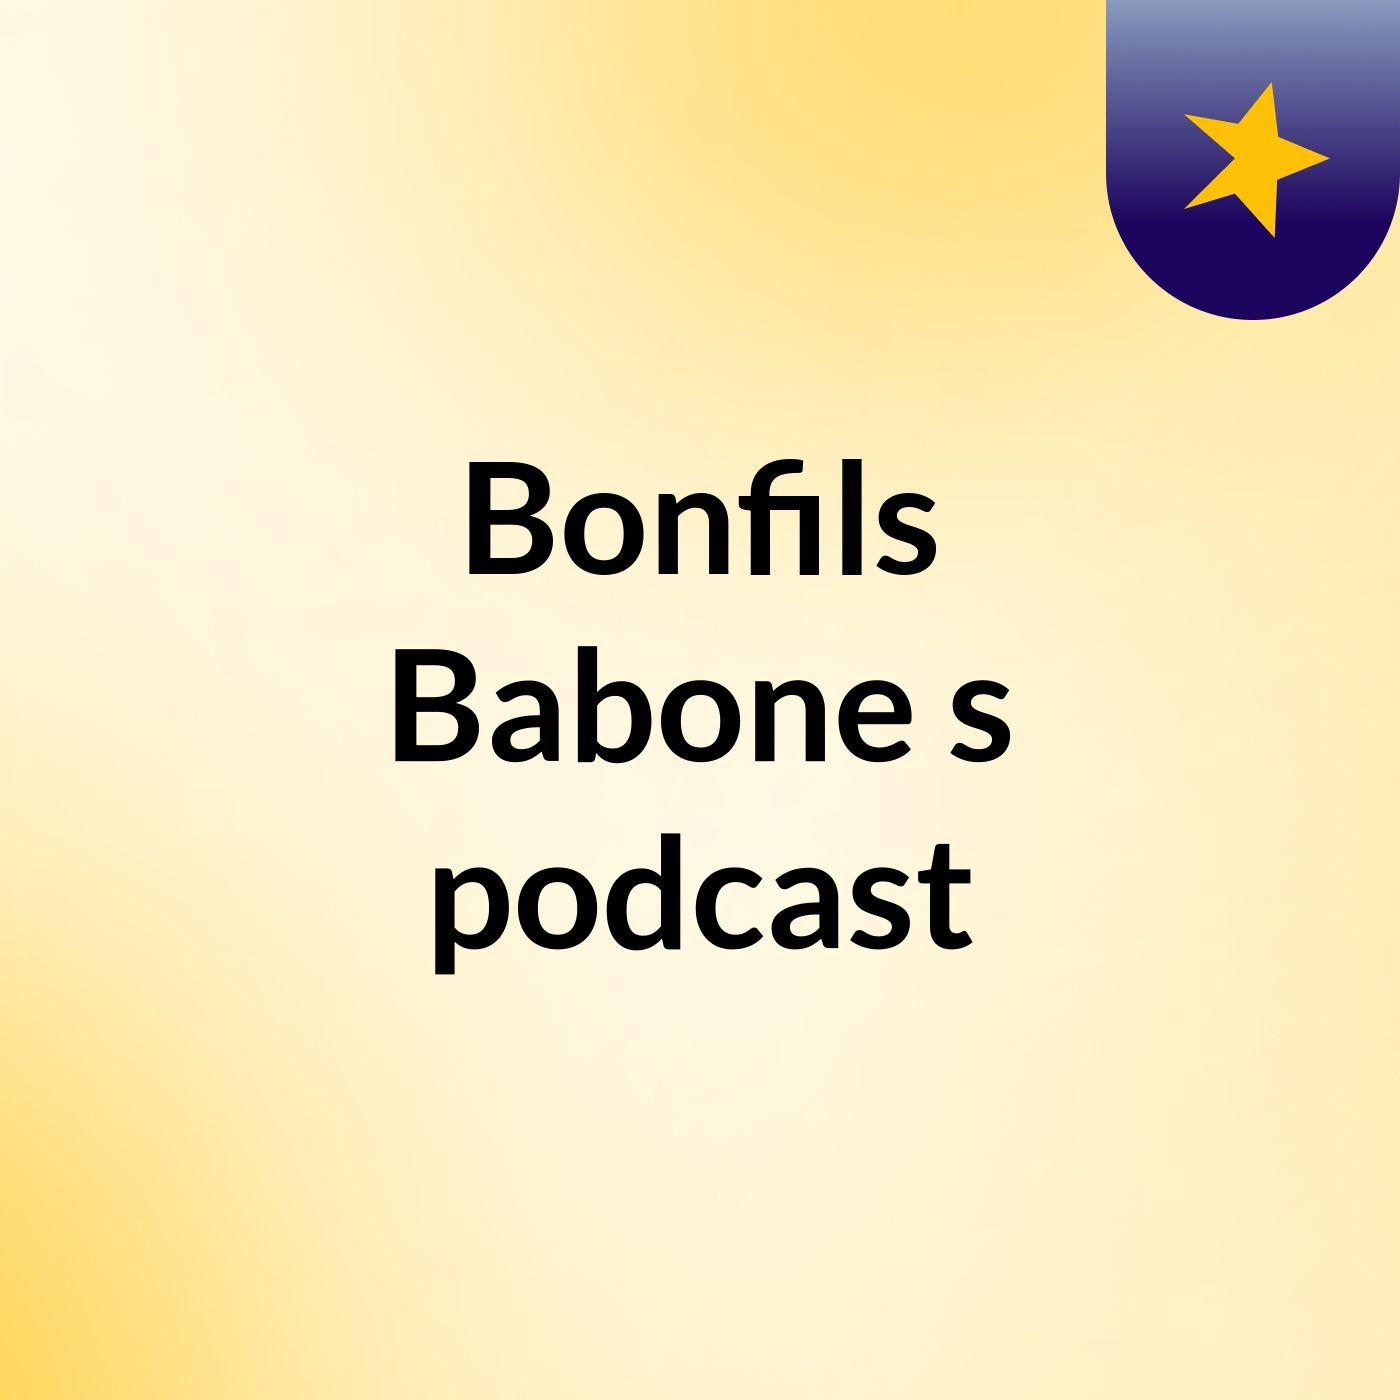 Episode 2 - Bonfils Babone's podcast